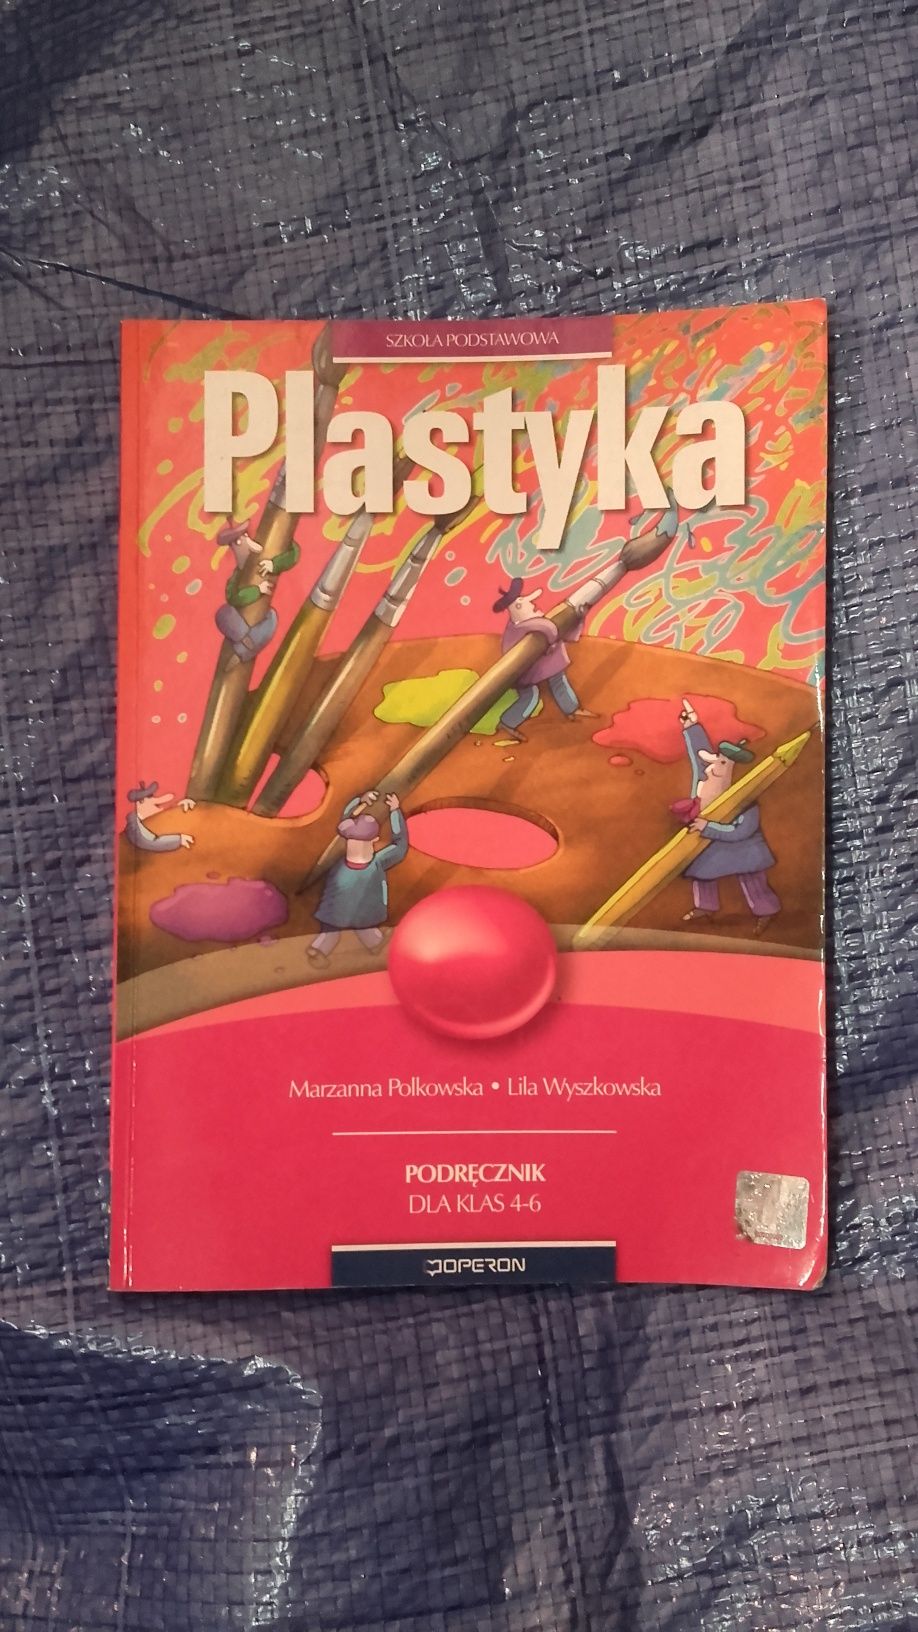 Plastyka podręcznik klasa 4-6 podstawowa Operon Polkowska Wyszkowska